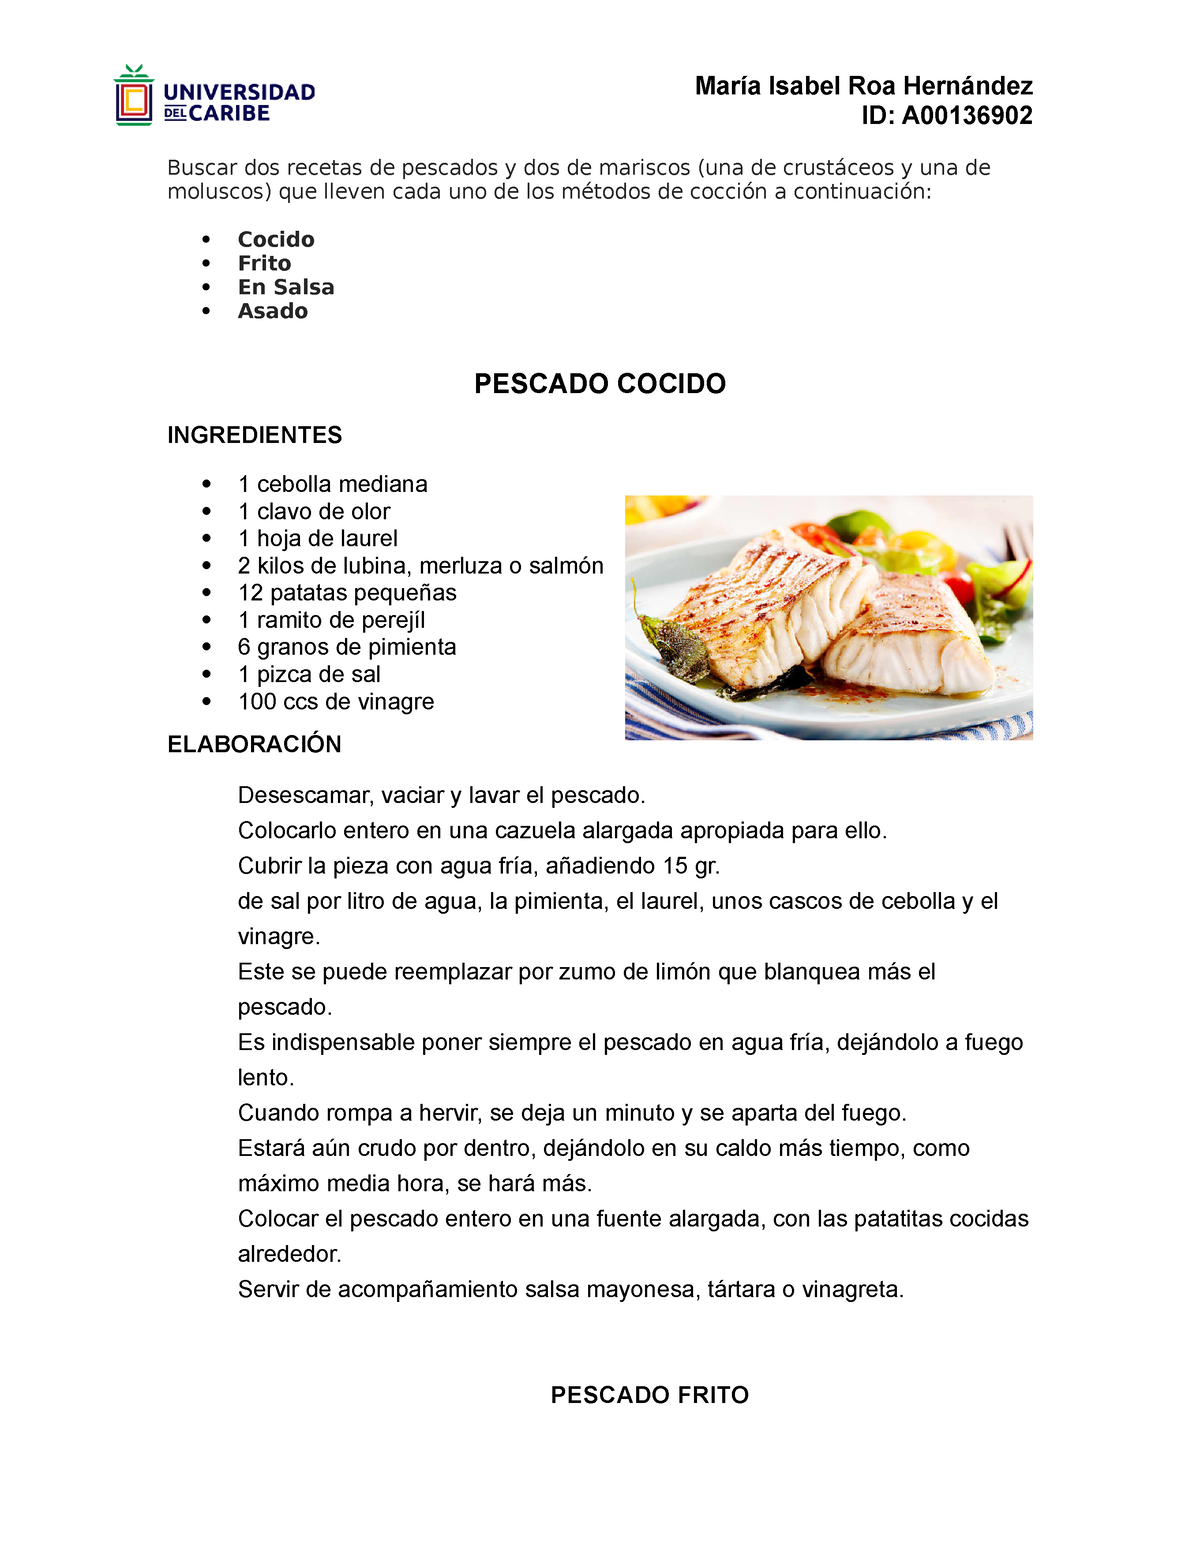 Roa Hernandez-Maria Isabel-Cocción mariscos - ID: A Buscar dos recetas de  pescados y dos de mariscos - Studocu